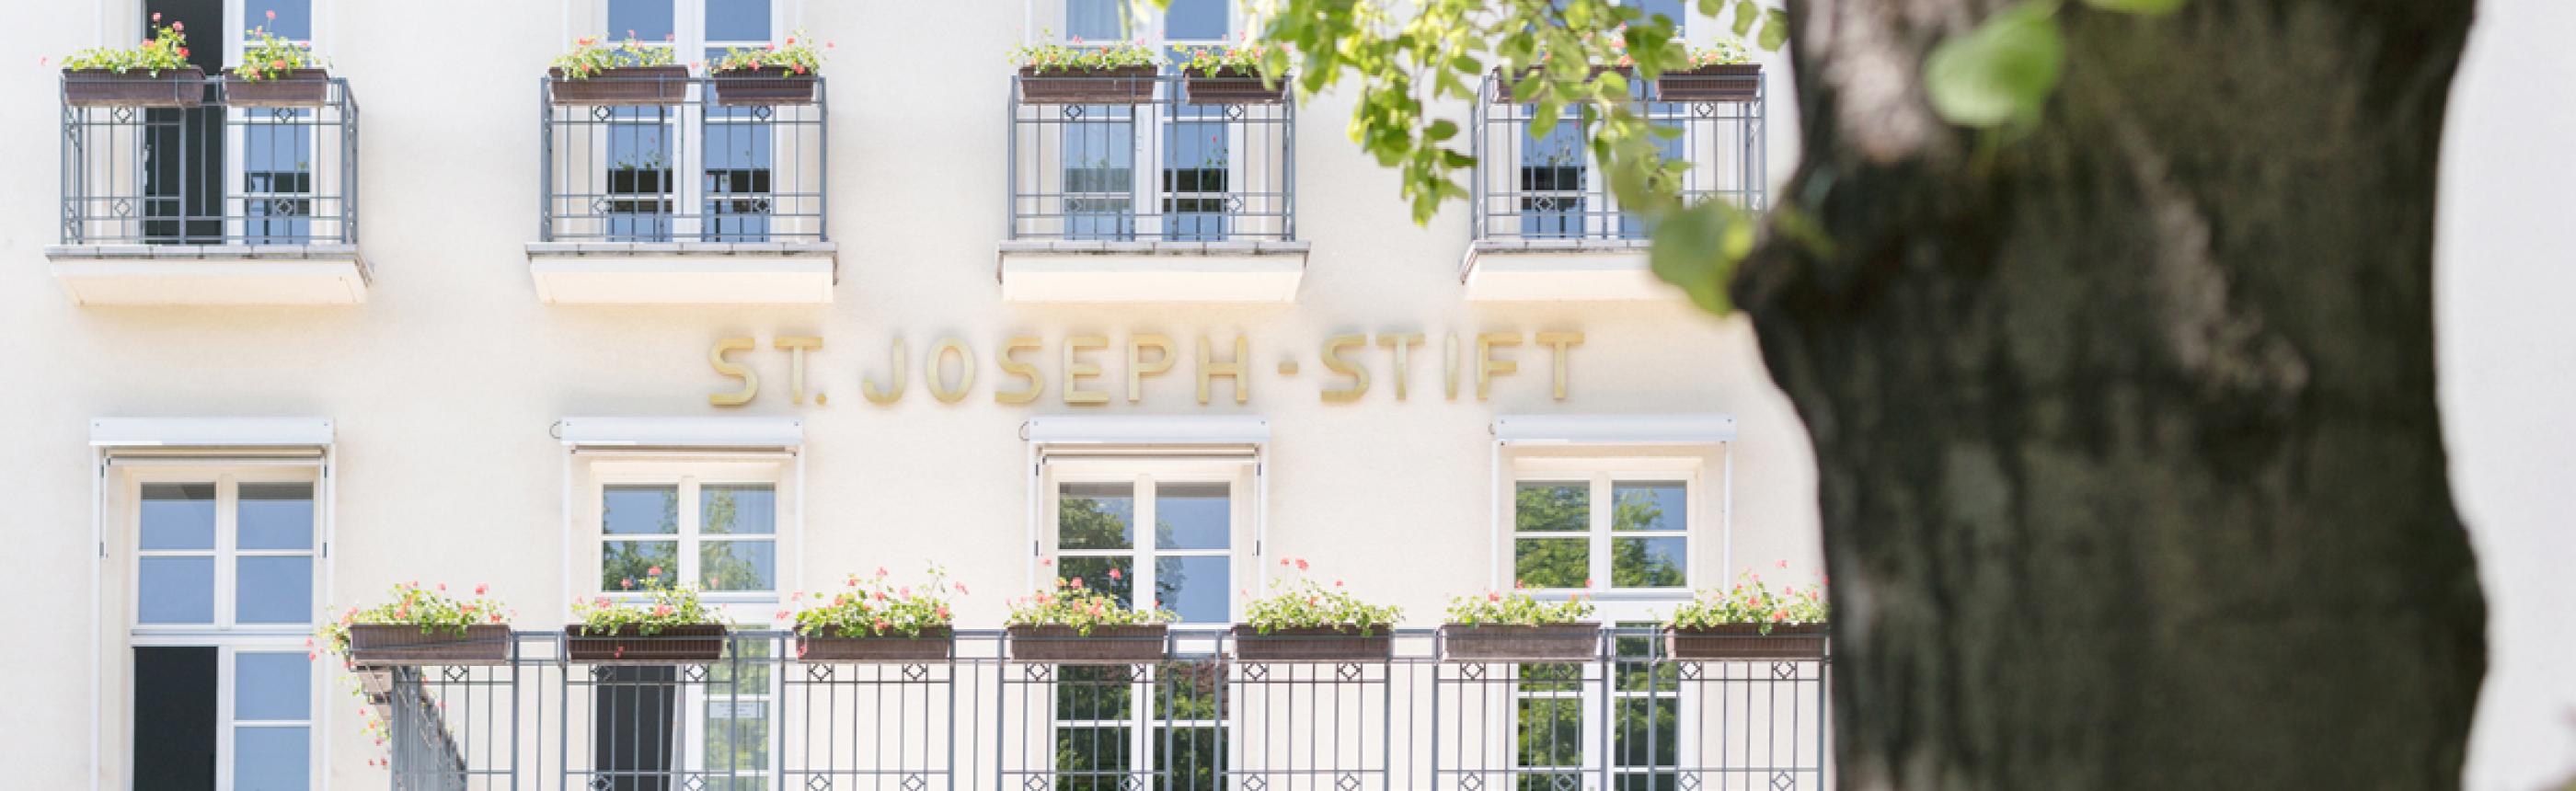 Haupteingang Krankenhaus St. Joseph-Stift Dresden mit historischem Schriftzug.